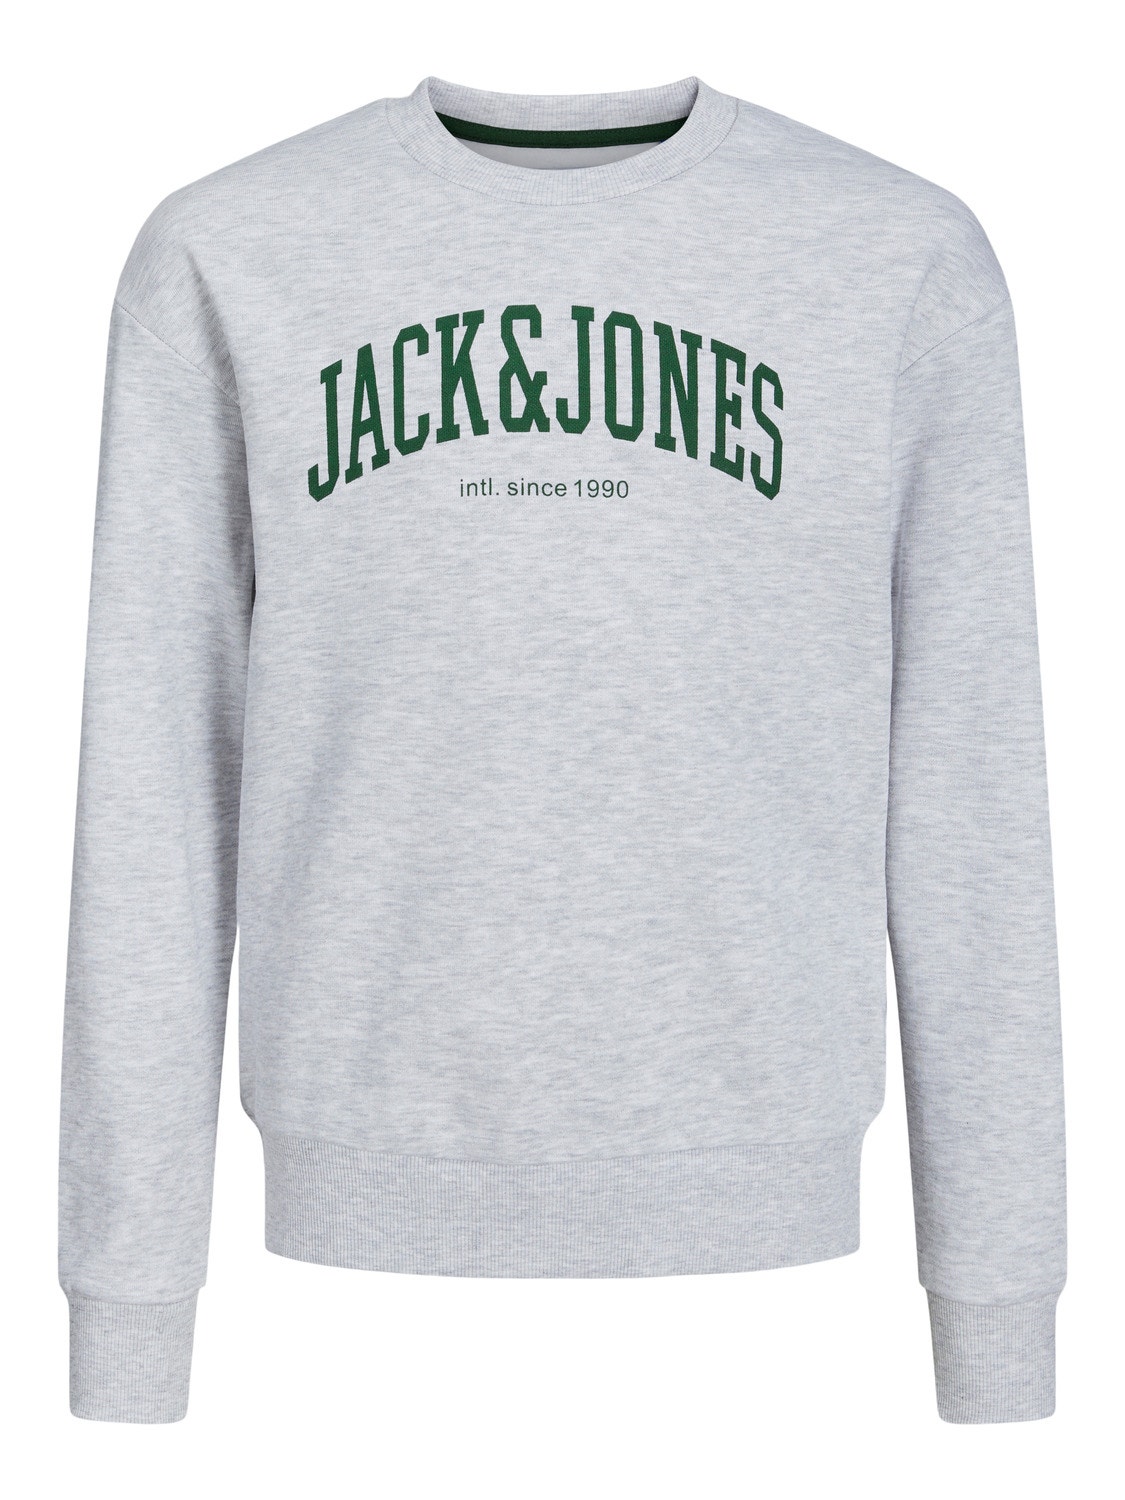 Jack & Jones Nadruk Bluza z okrągłym dekoltem Dla chłopców -White Melange - 12249347